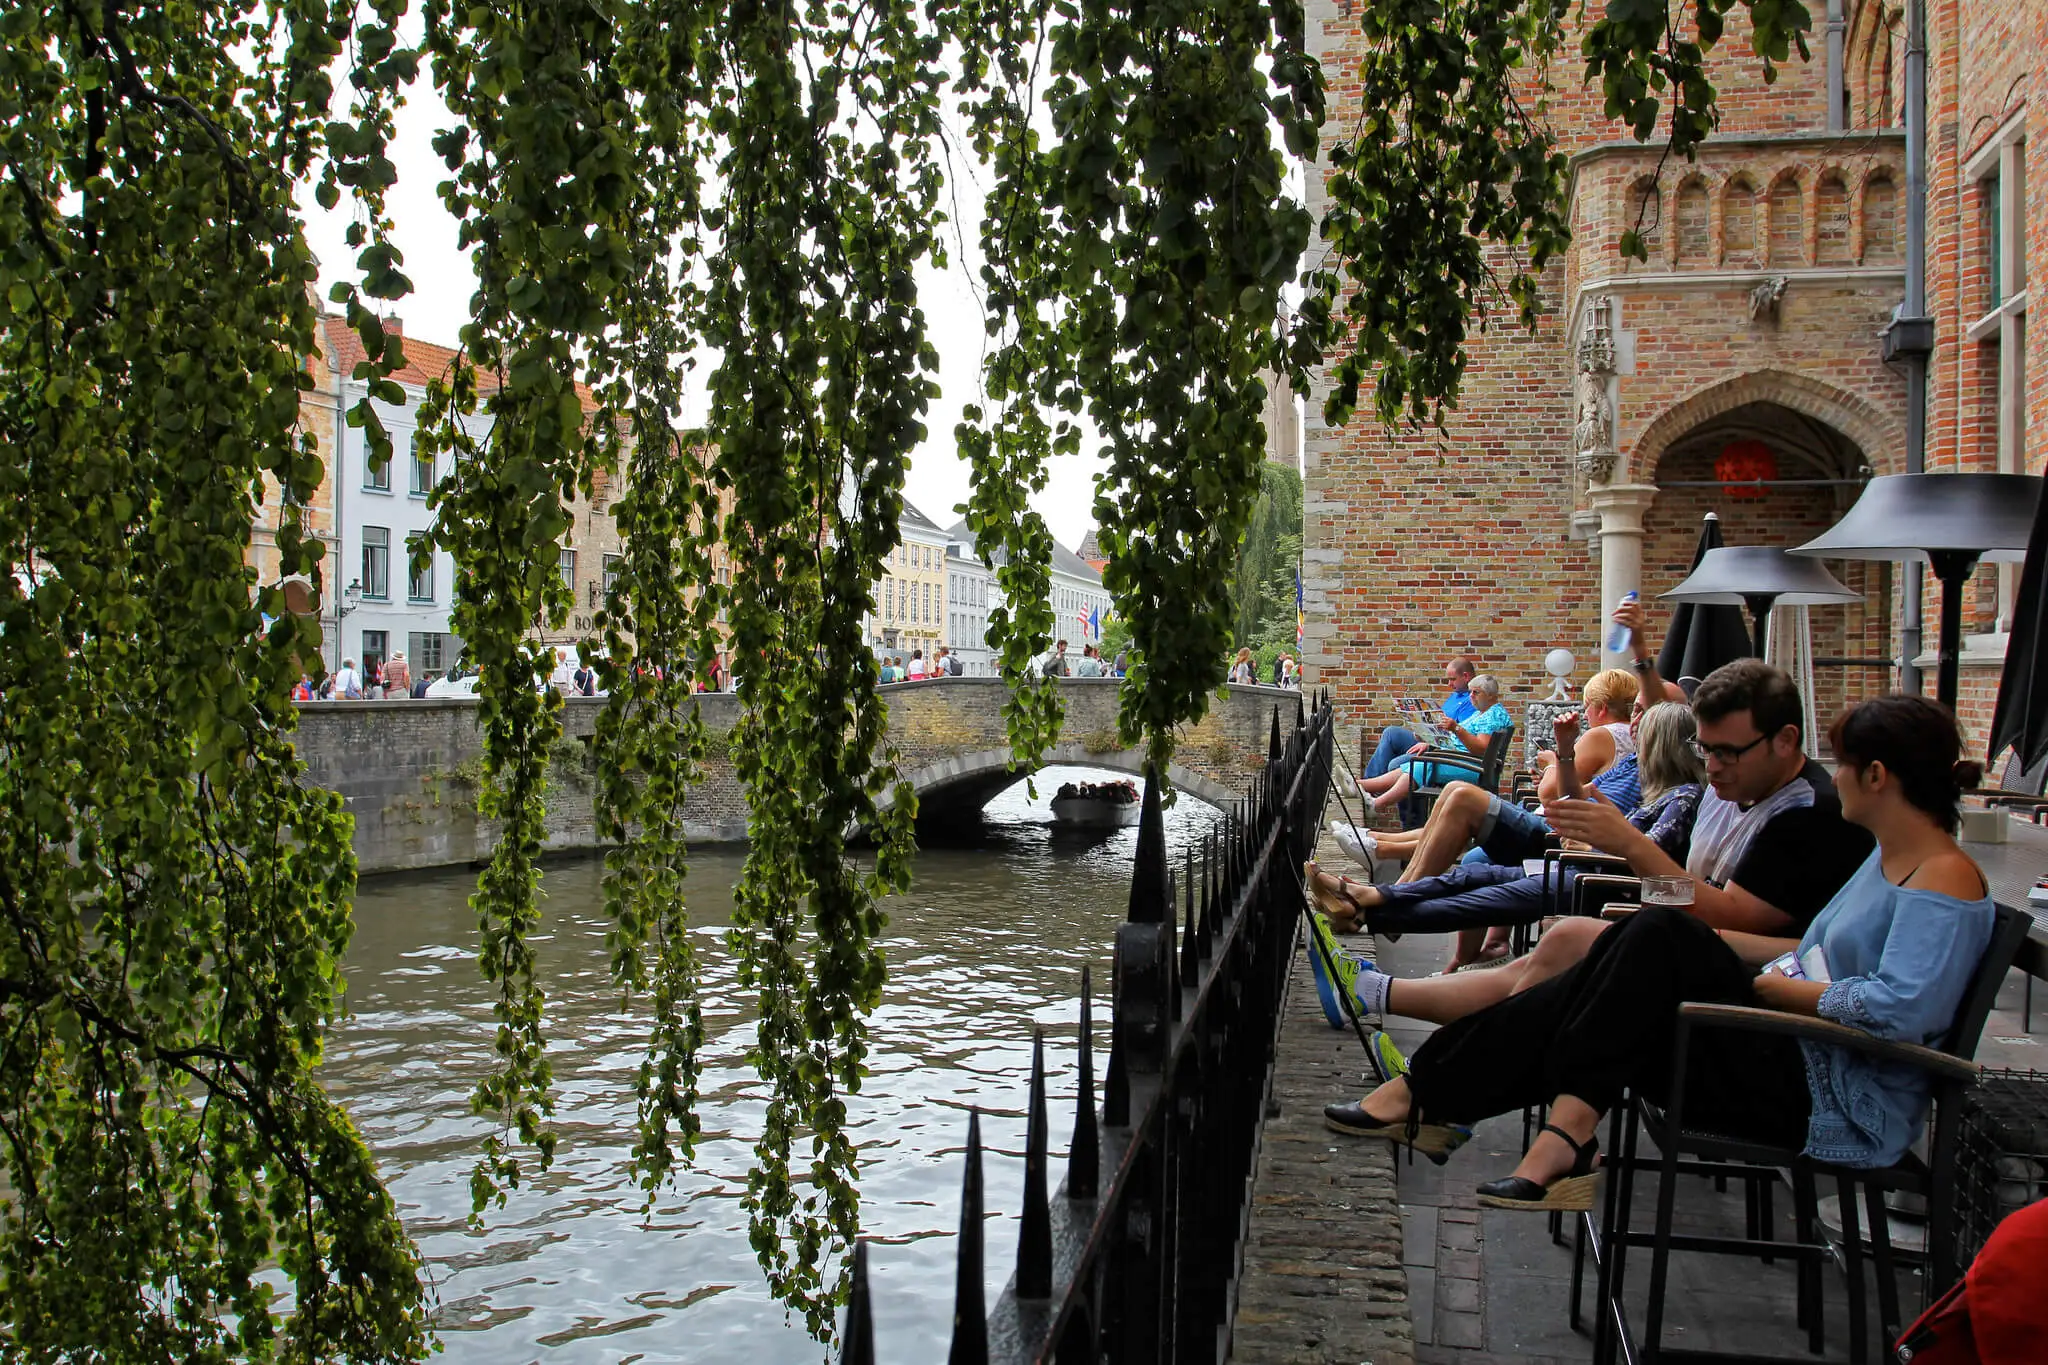 Ανακαλύπτοντας την πόλη της Μπριζ (Brugge) στο Βέλγιο (Φλάνδρα) και τα αξιοθέατά της